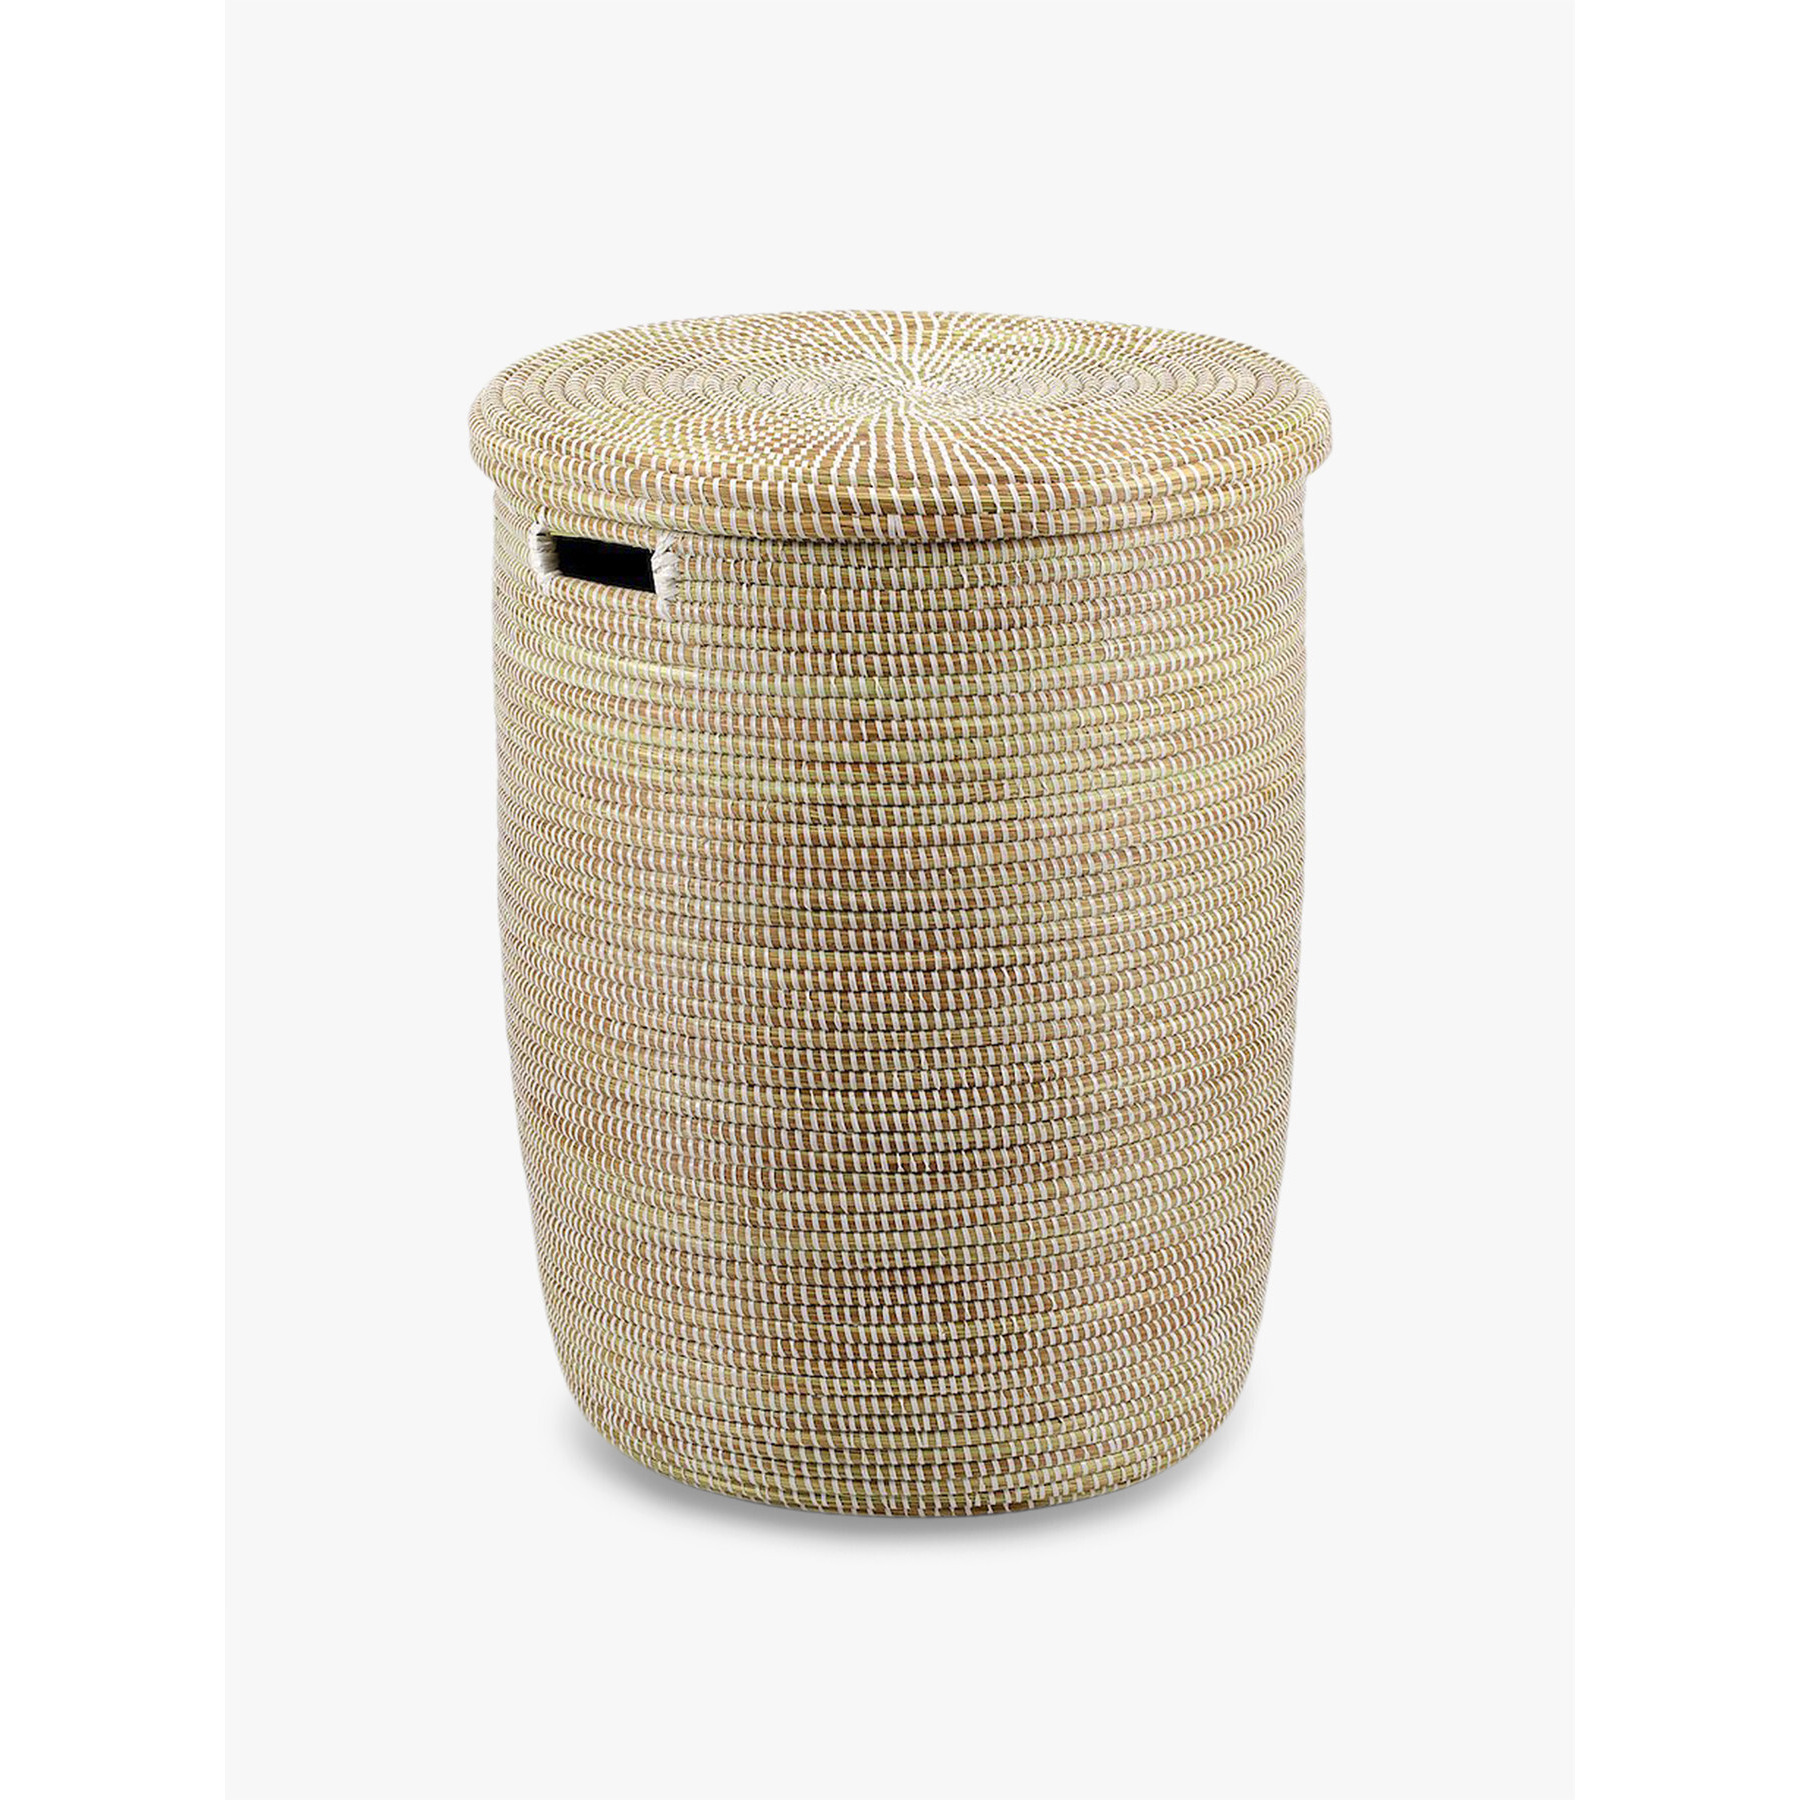 Artisanne Round Medium Basket Beige - image 1